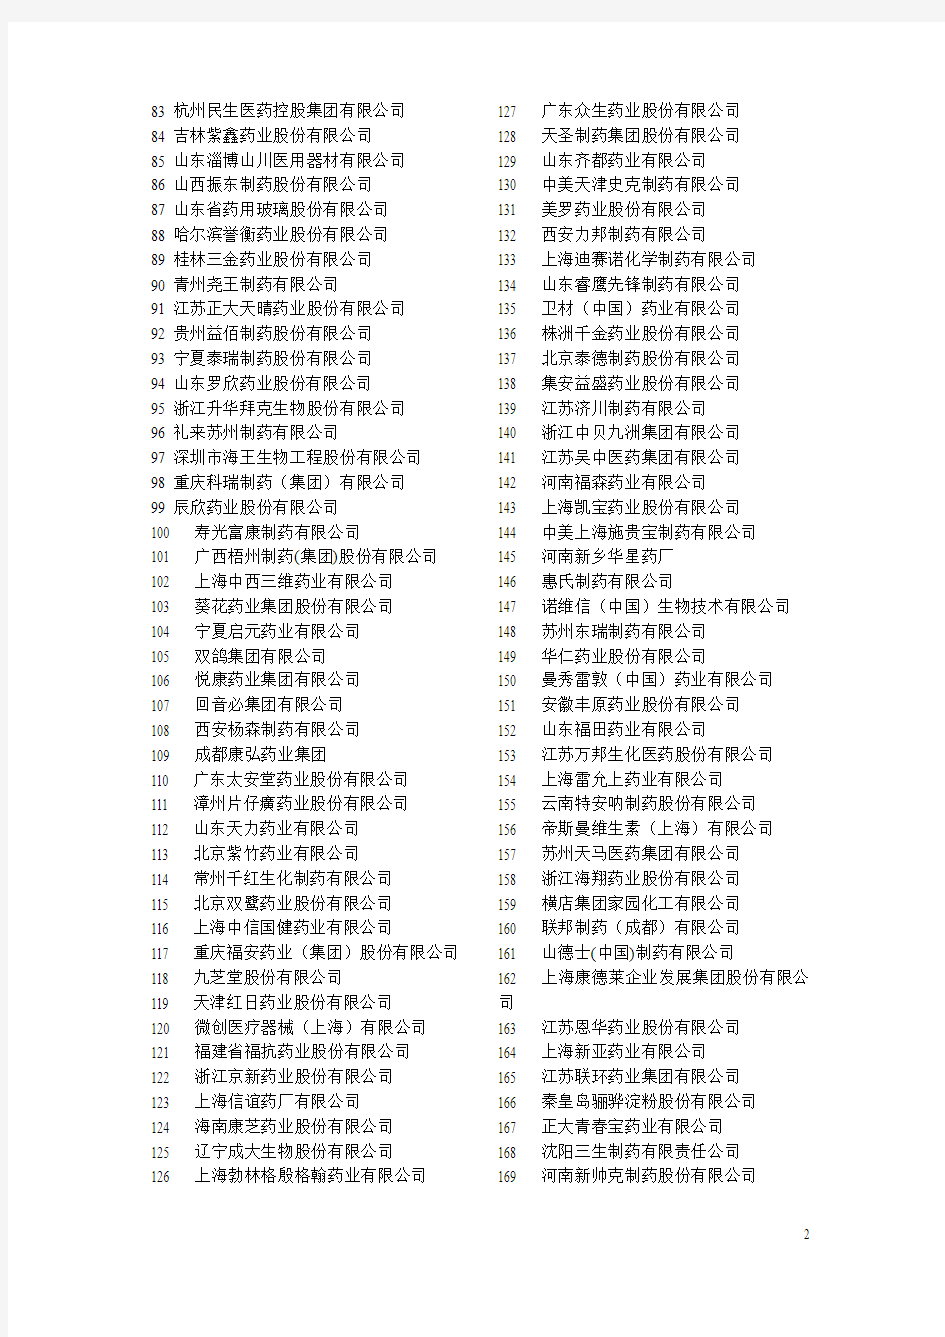 2012年中国医药企业500强完全榜单